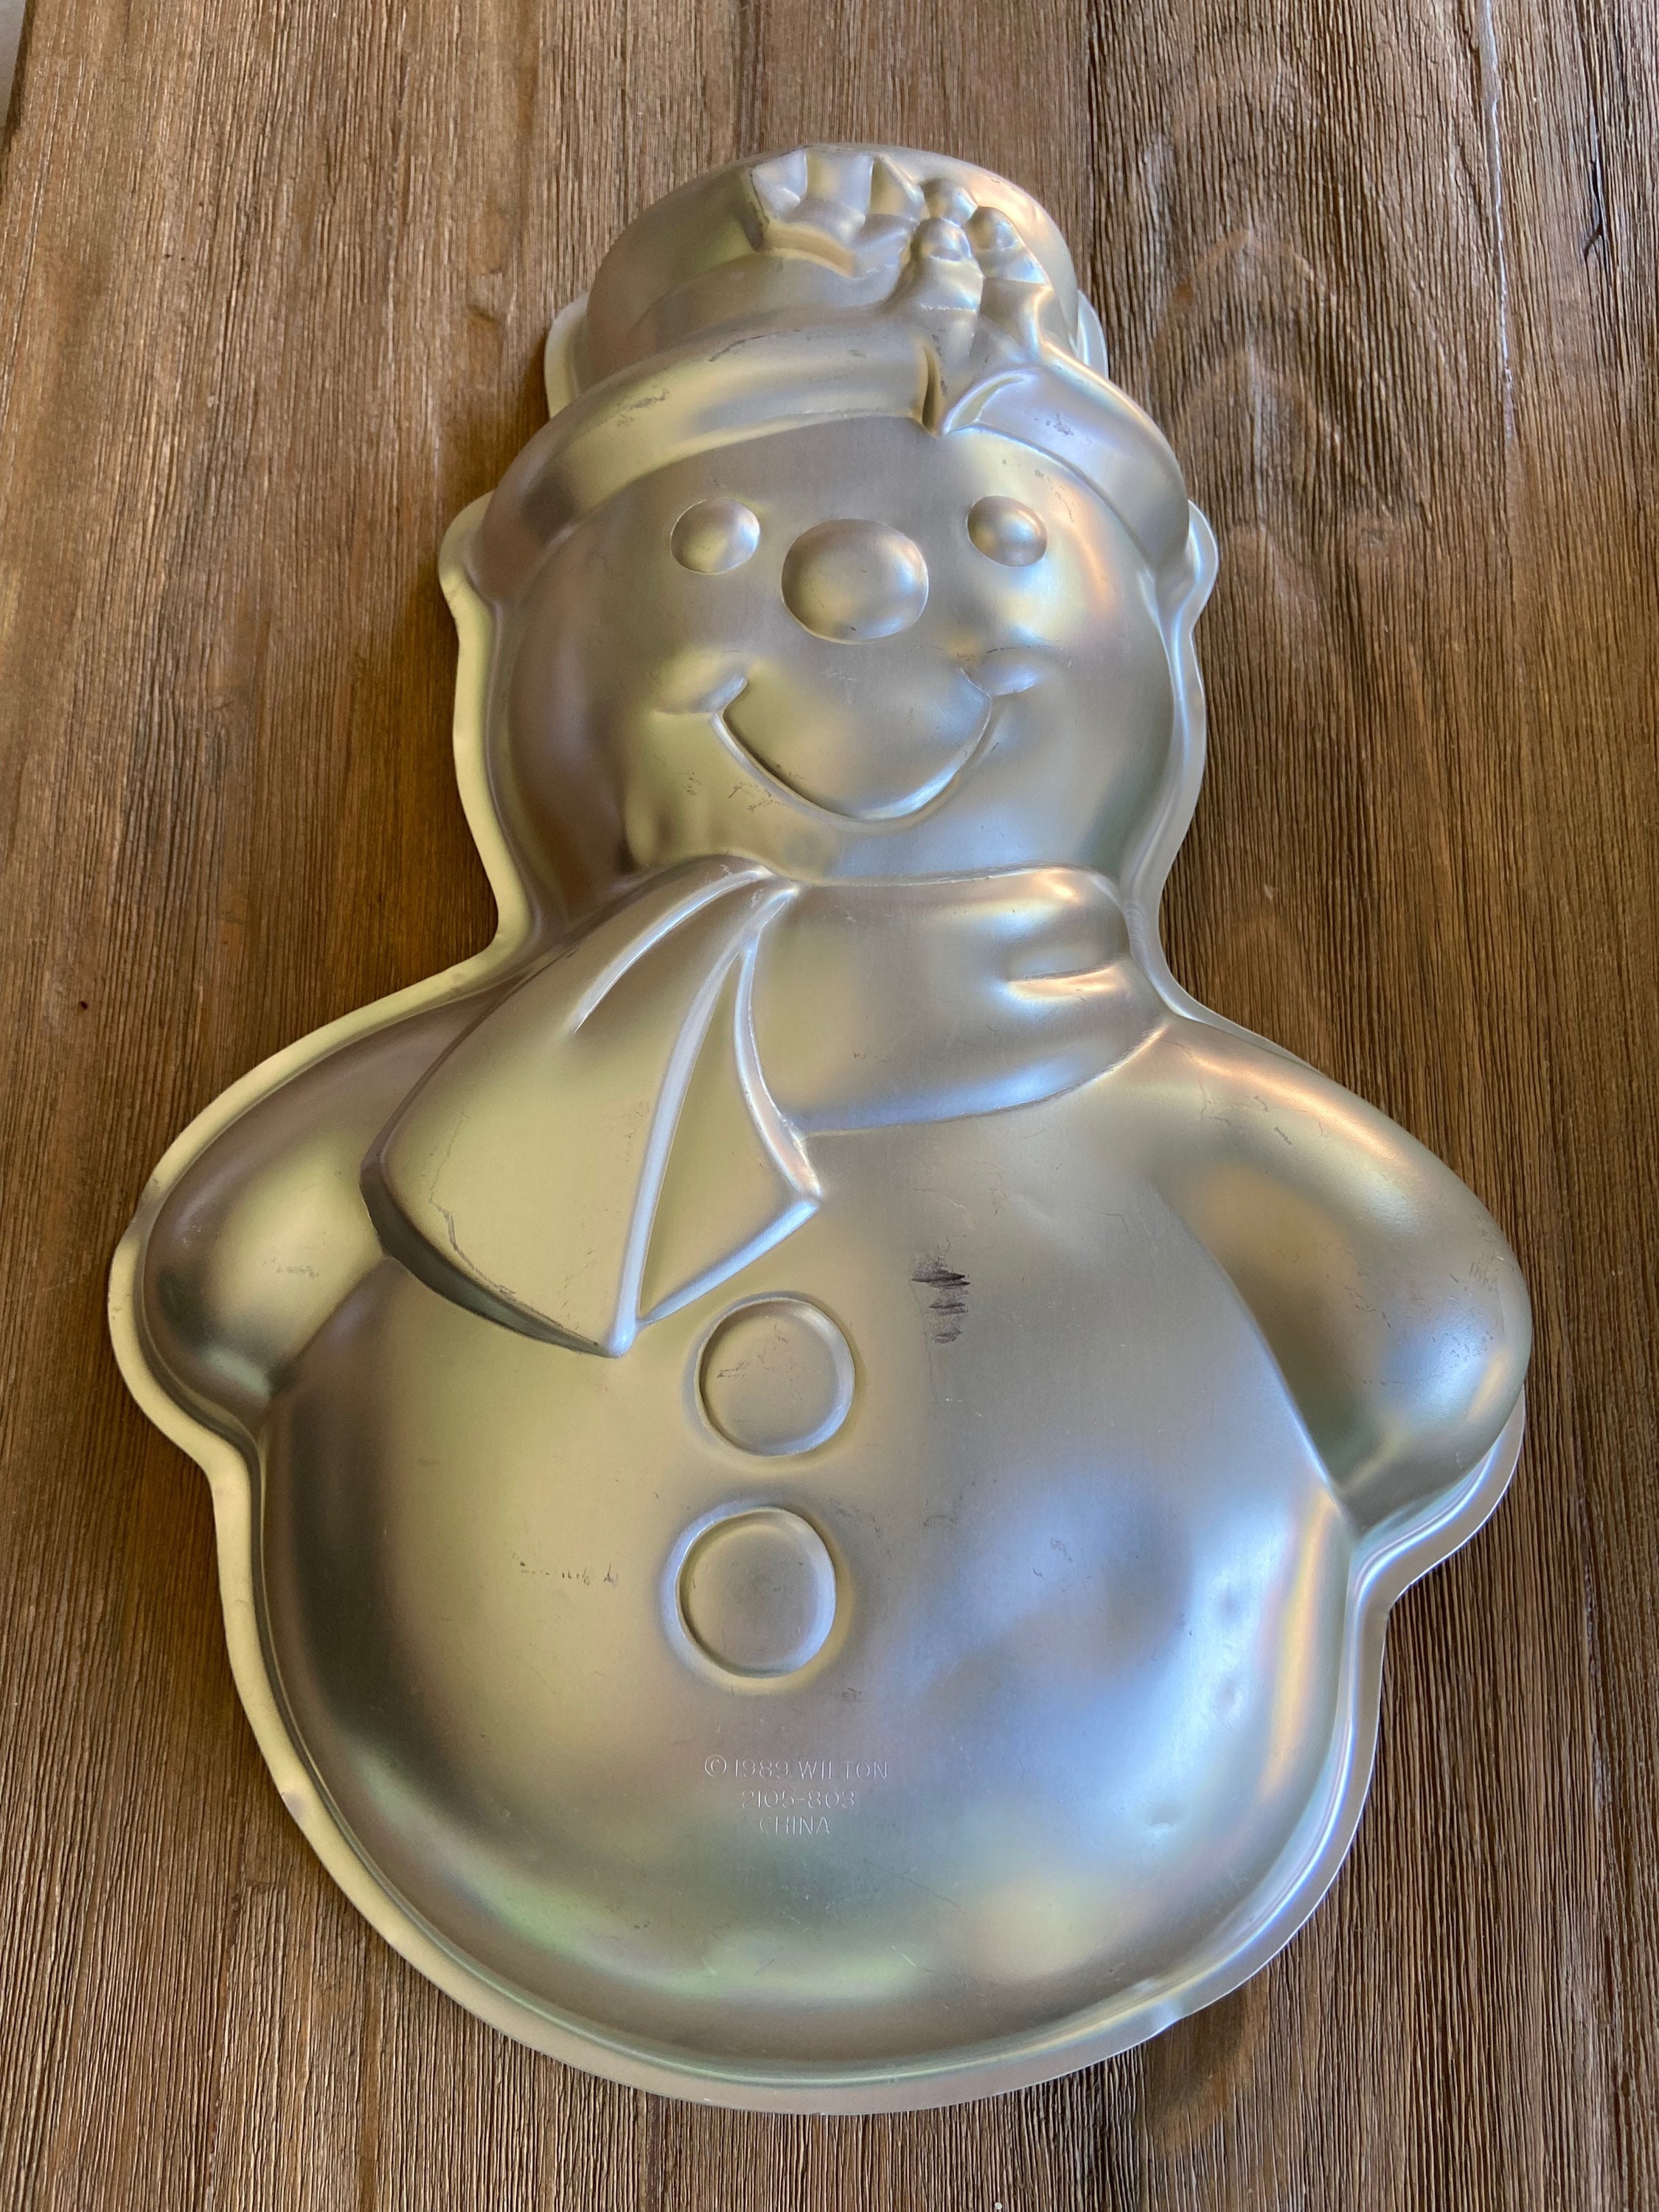 Wilton - Disney FROZEN OLAF Snowman - Giant Cookie Pan Cake Mold #2105-8500